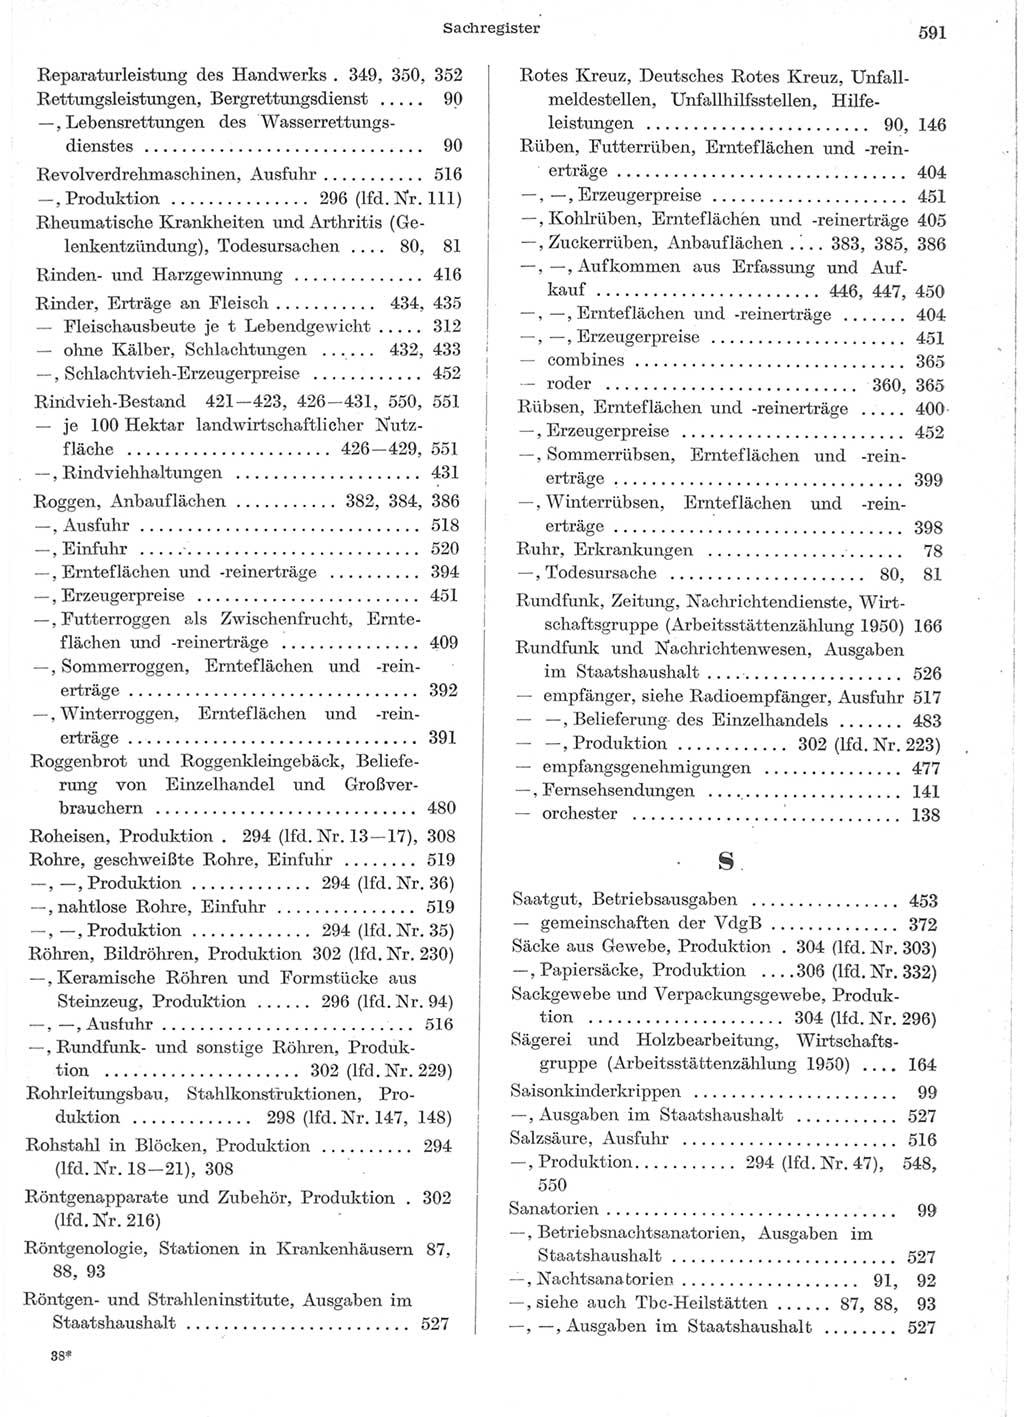 Statistisches Jahrbuch der Deutschen Demokratischen Republik (DDR) 1957, Seite 591 (Stat. Jb. DDR 1957, S. 591)